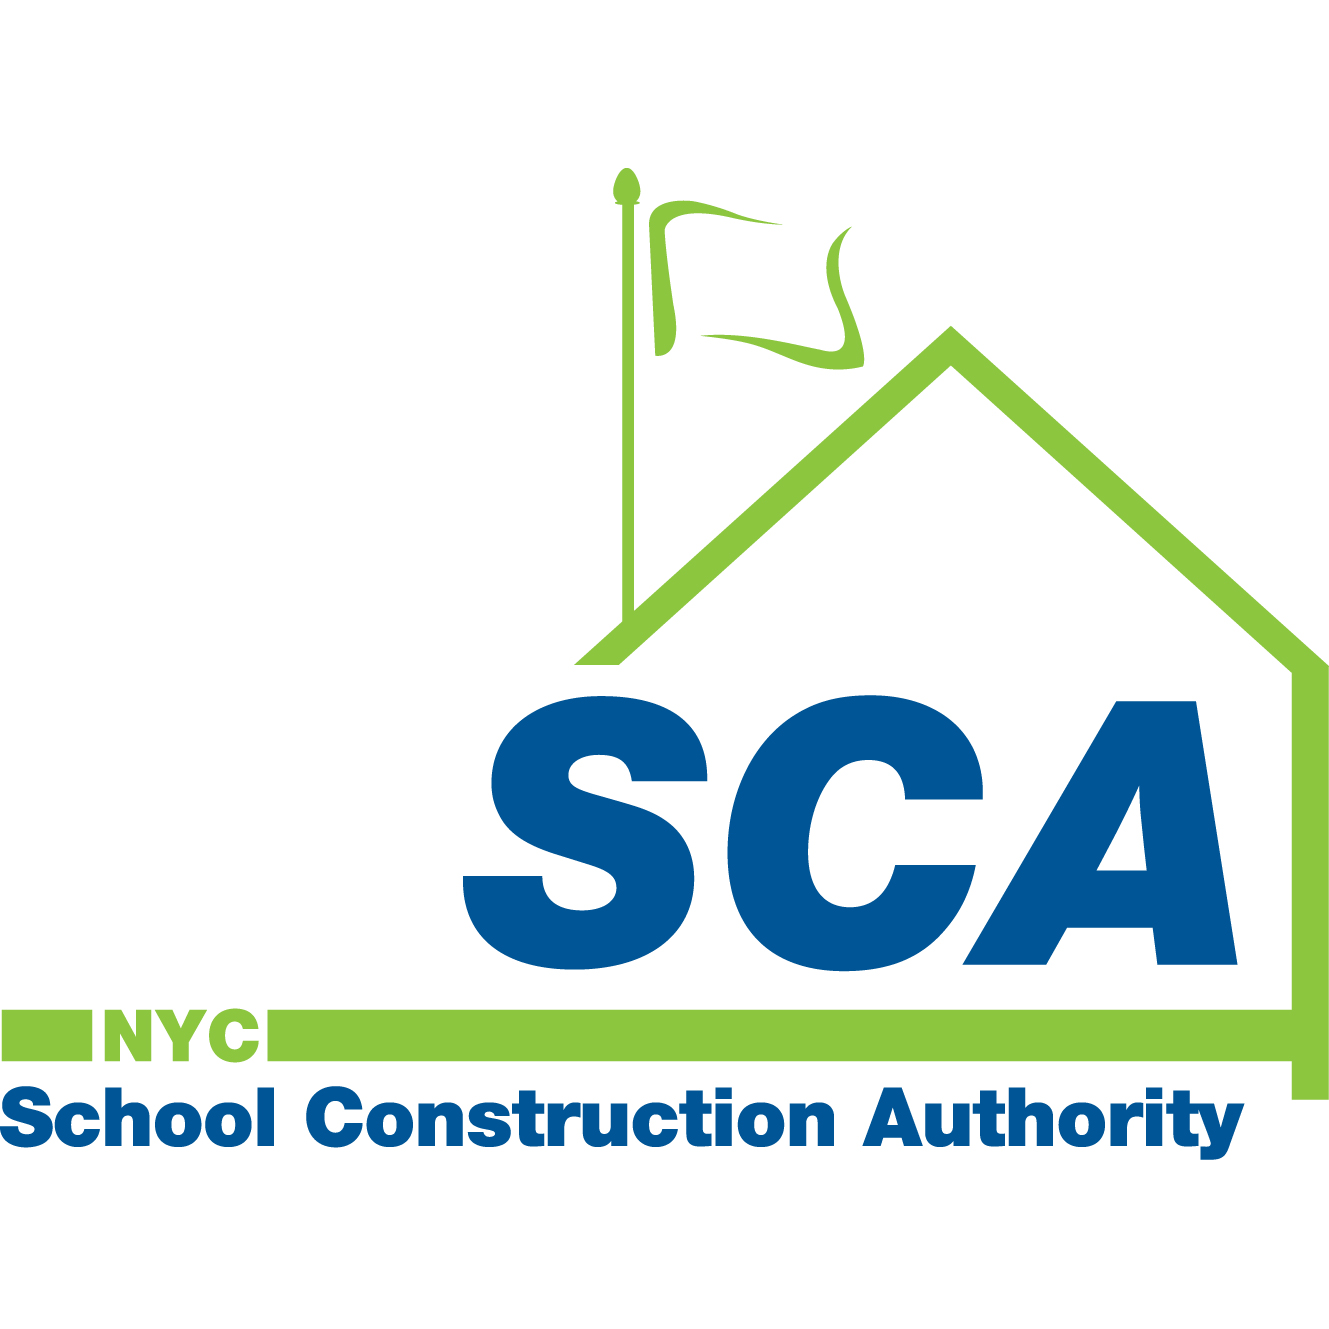 School Construction Authority